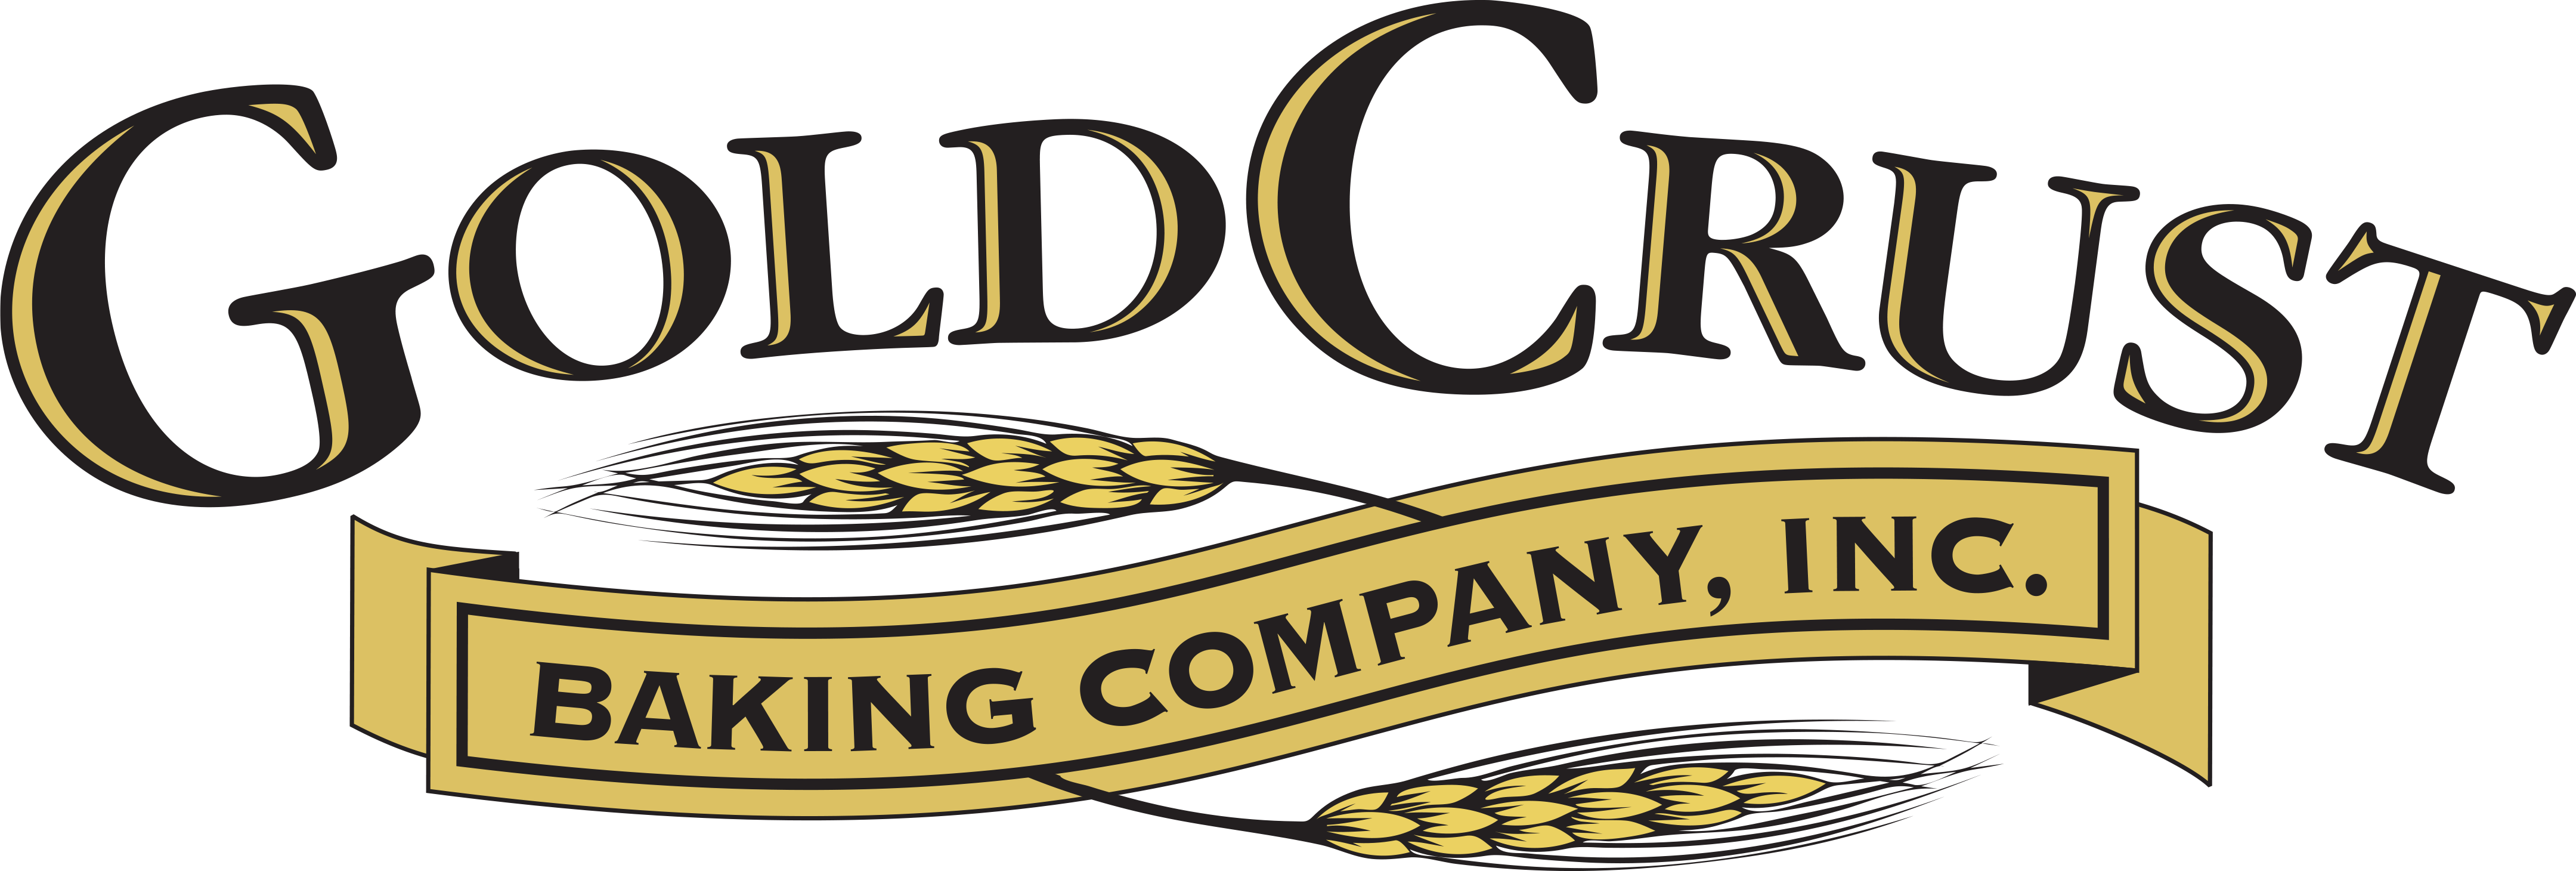 GoldCrust Baking Company, Inc.